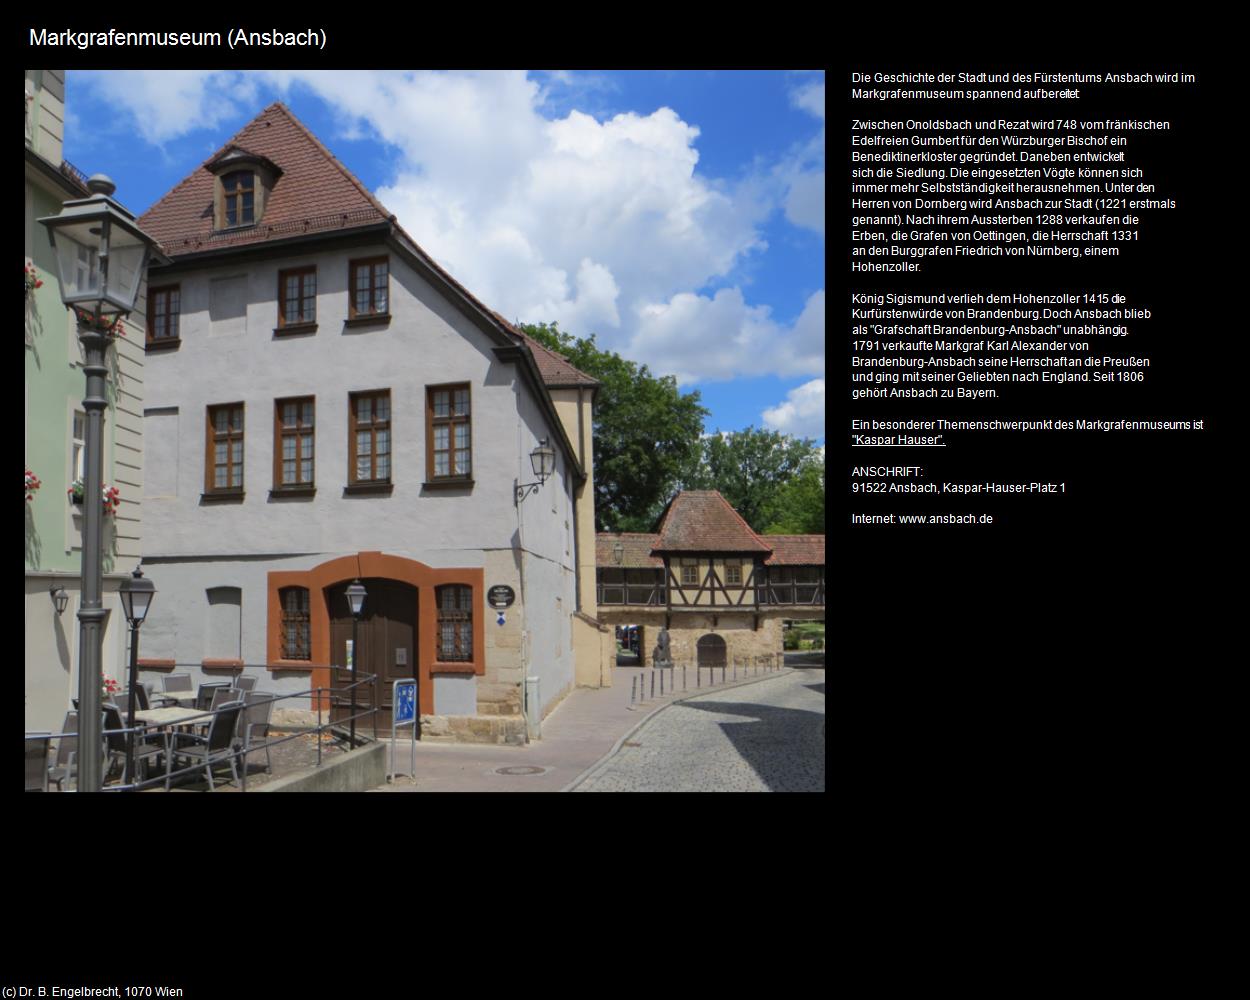 Markgrafenmuseum (Ansbach) in Kulturatlas-BAYERN(c)B.Engelbrecht